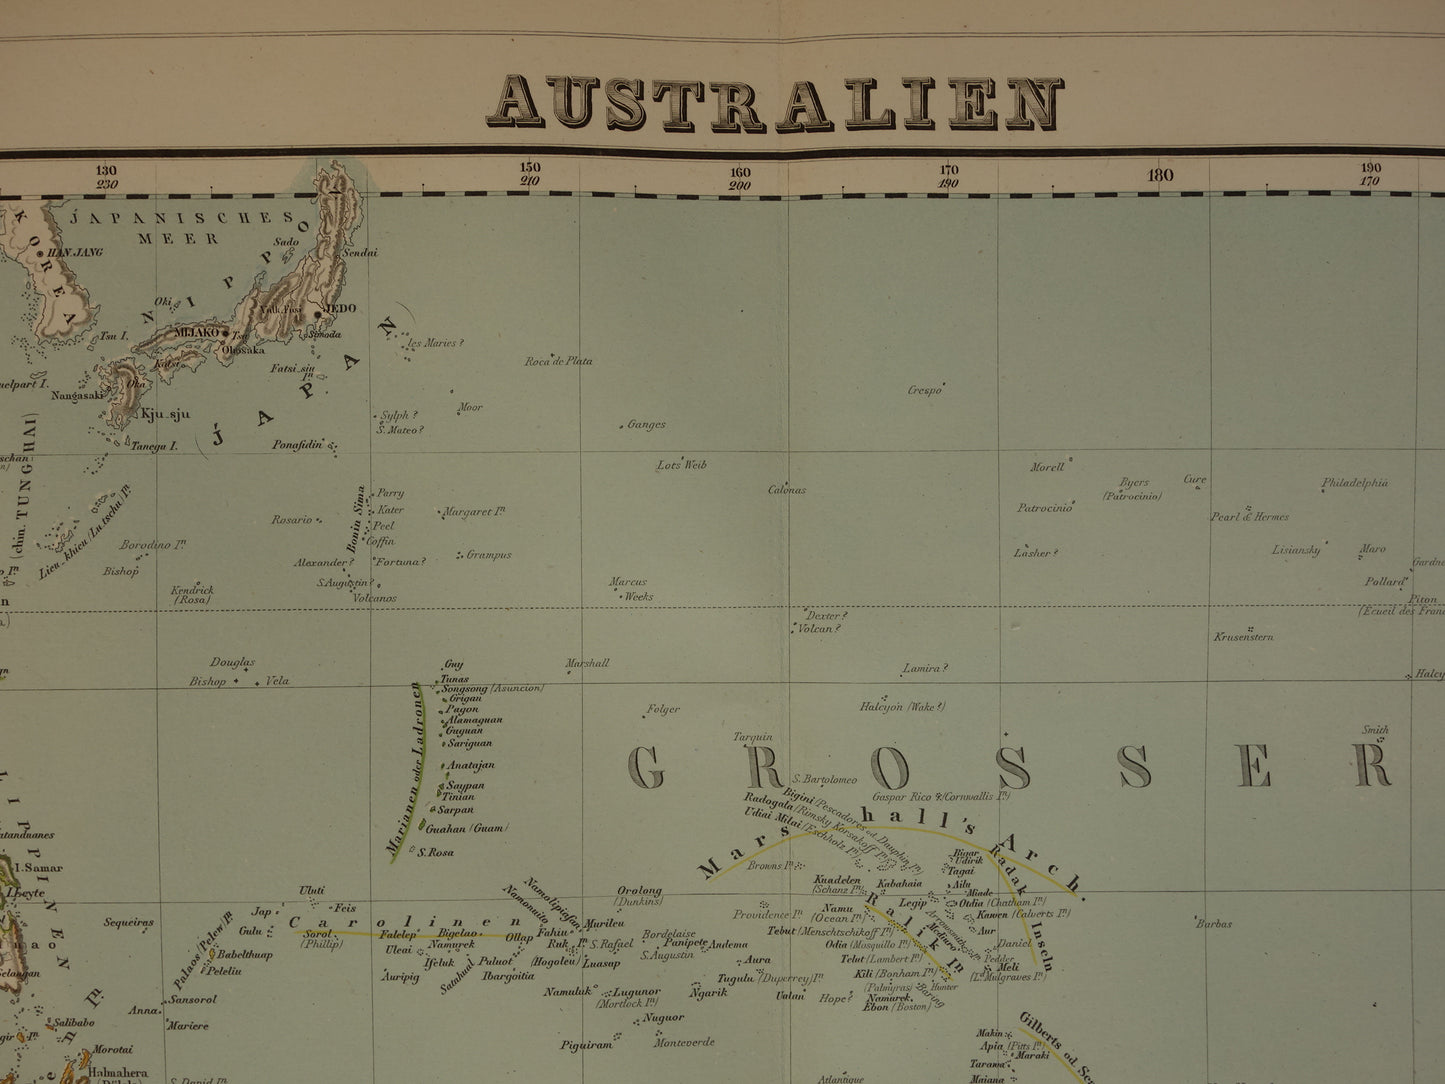 Oude landkaart van Oceanië in 1855 originele antieke grote kaart Australië Indonesië Polynesië handgekleurde vintage landkaarten